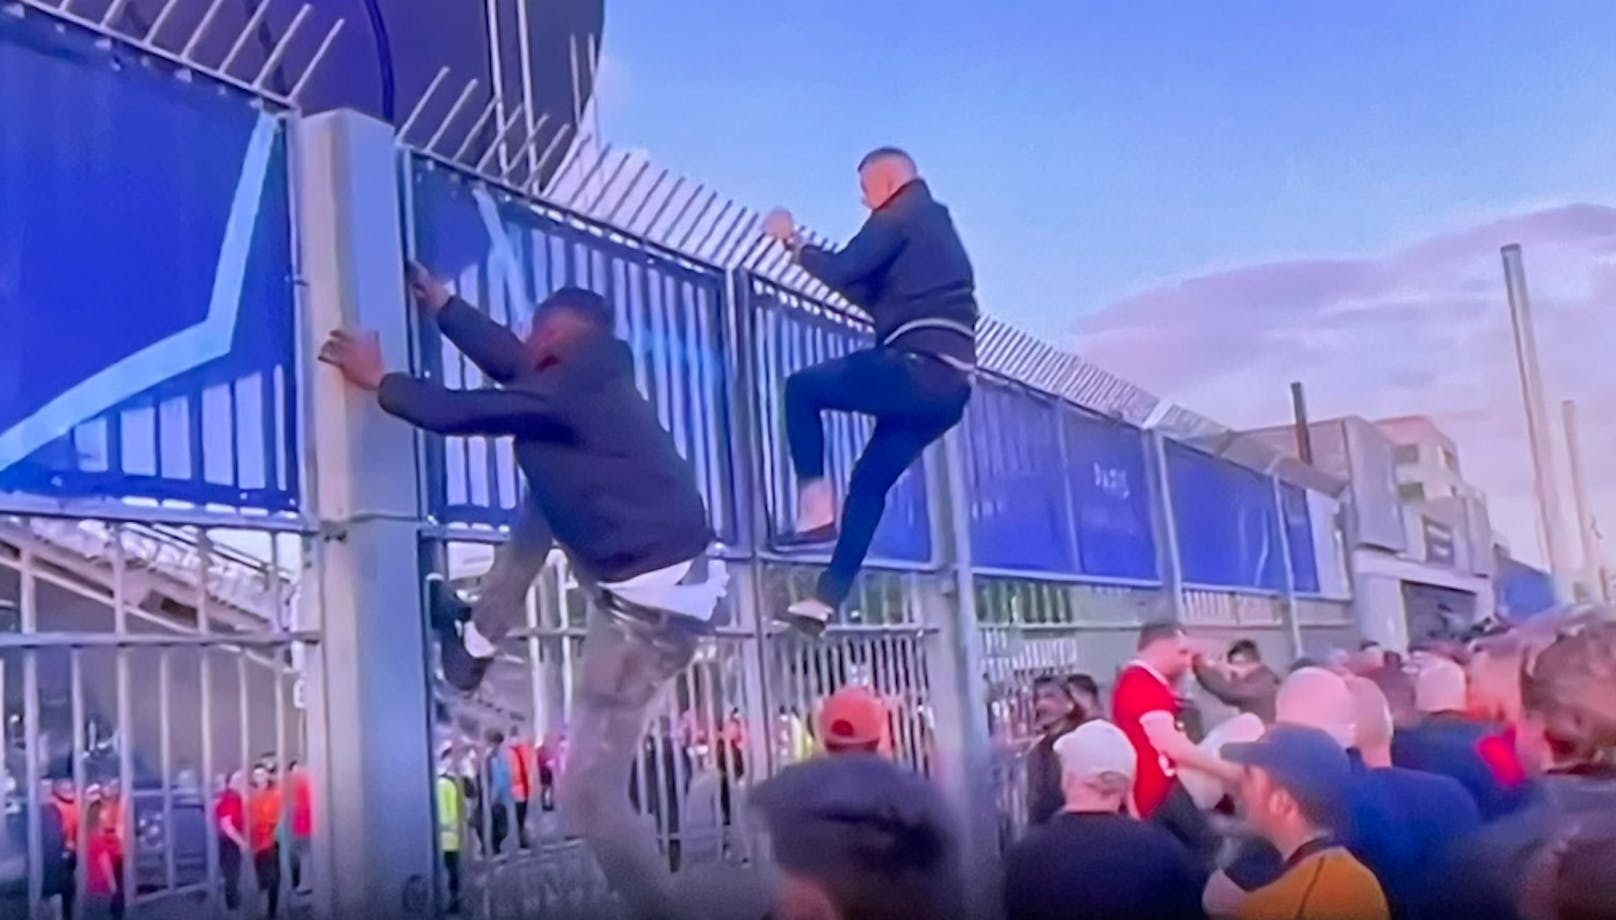 Fans versuchten über die Zäune zu klettern